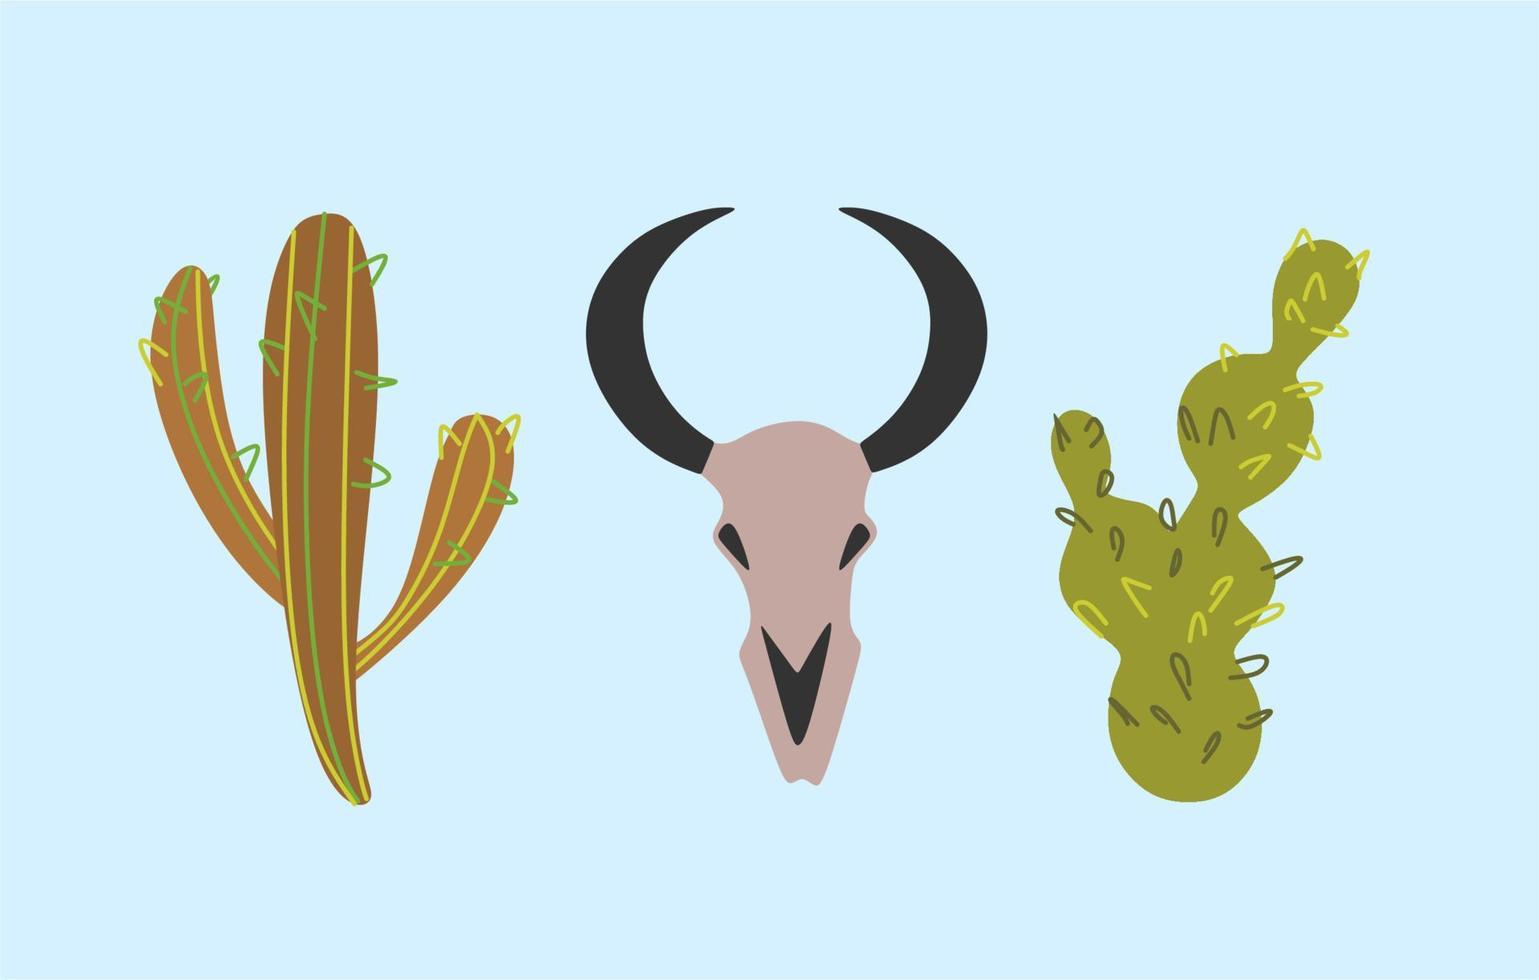 ilustración retro - conjunto de elementos. estado de ánimo vaquero. un conjunto de dibujos sobre el tema del salvaje oeste. dos tipos de cactus, un cráneo de toro. vector